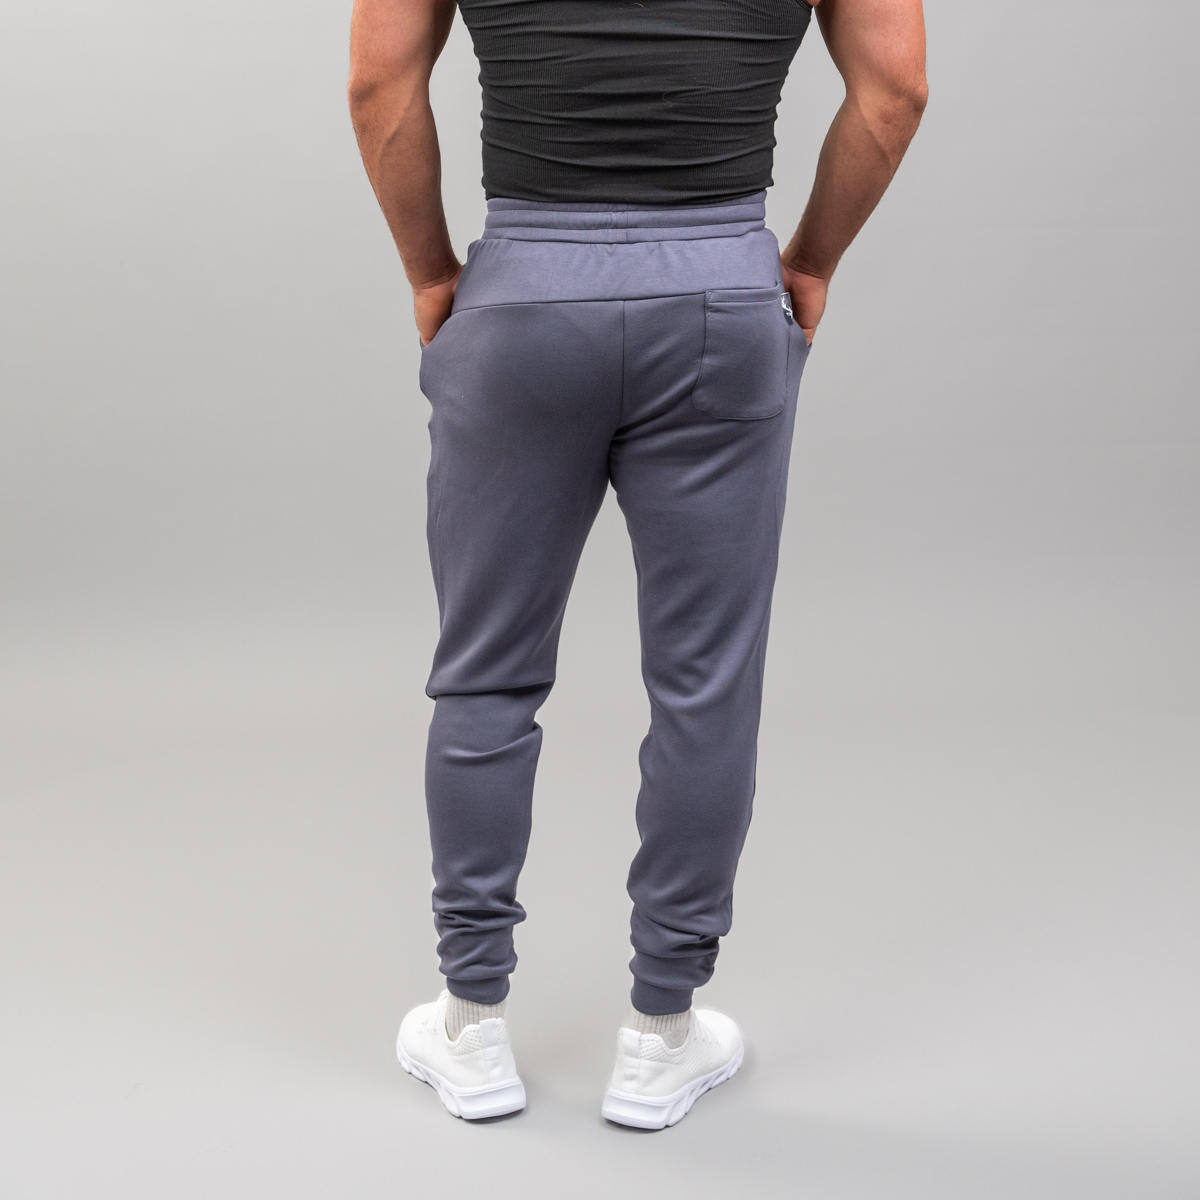 Style Mens ALPHALETE Brand Jogger Sweatpants Man Gyms Workout